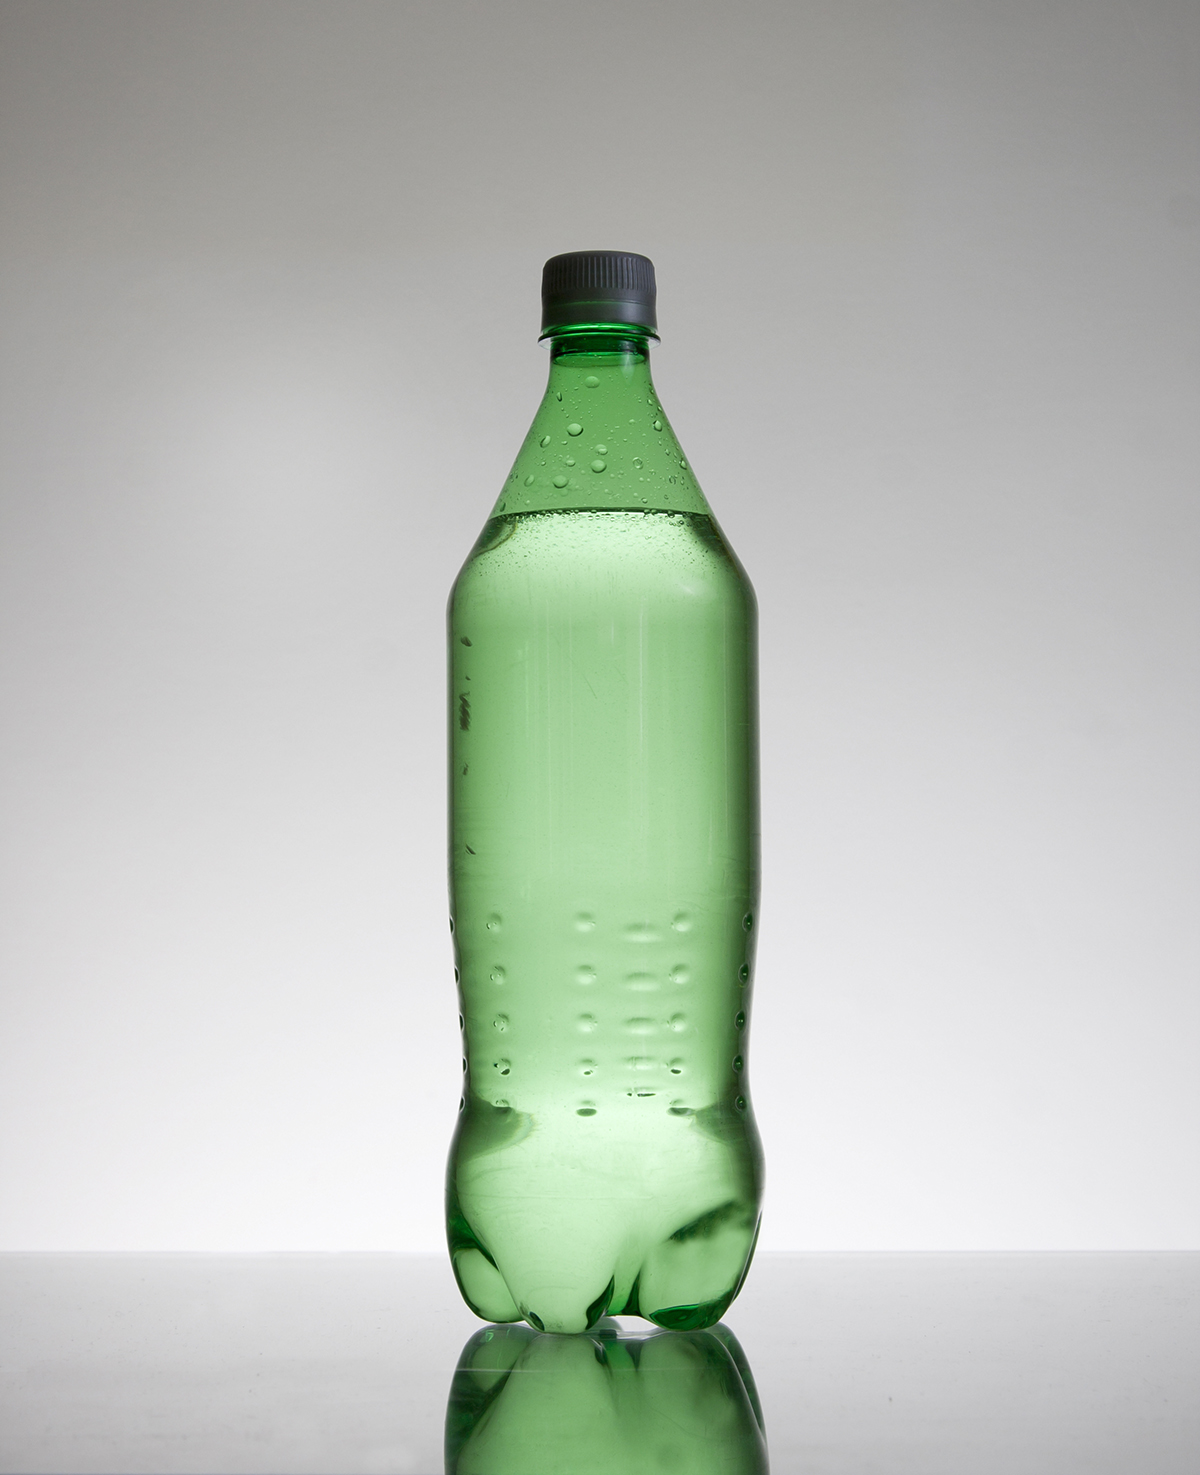 26 2-Liter Soda Bottles